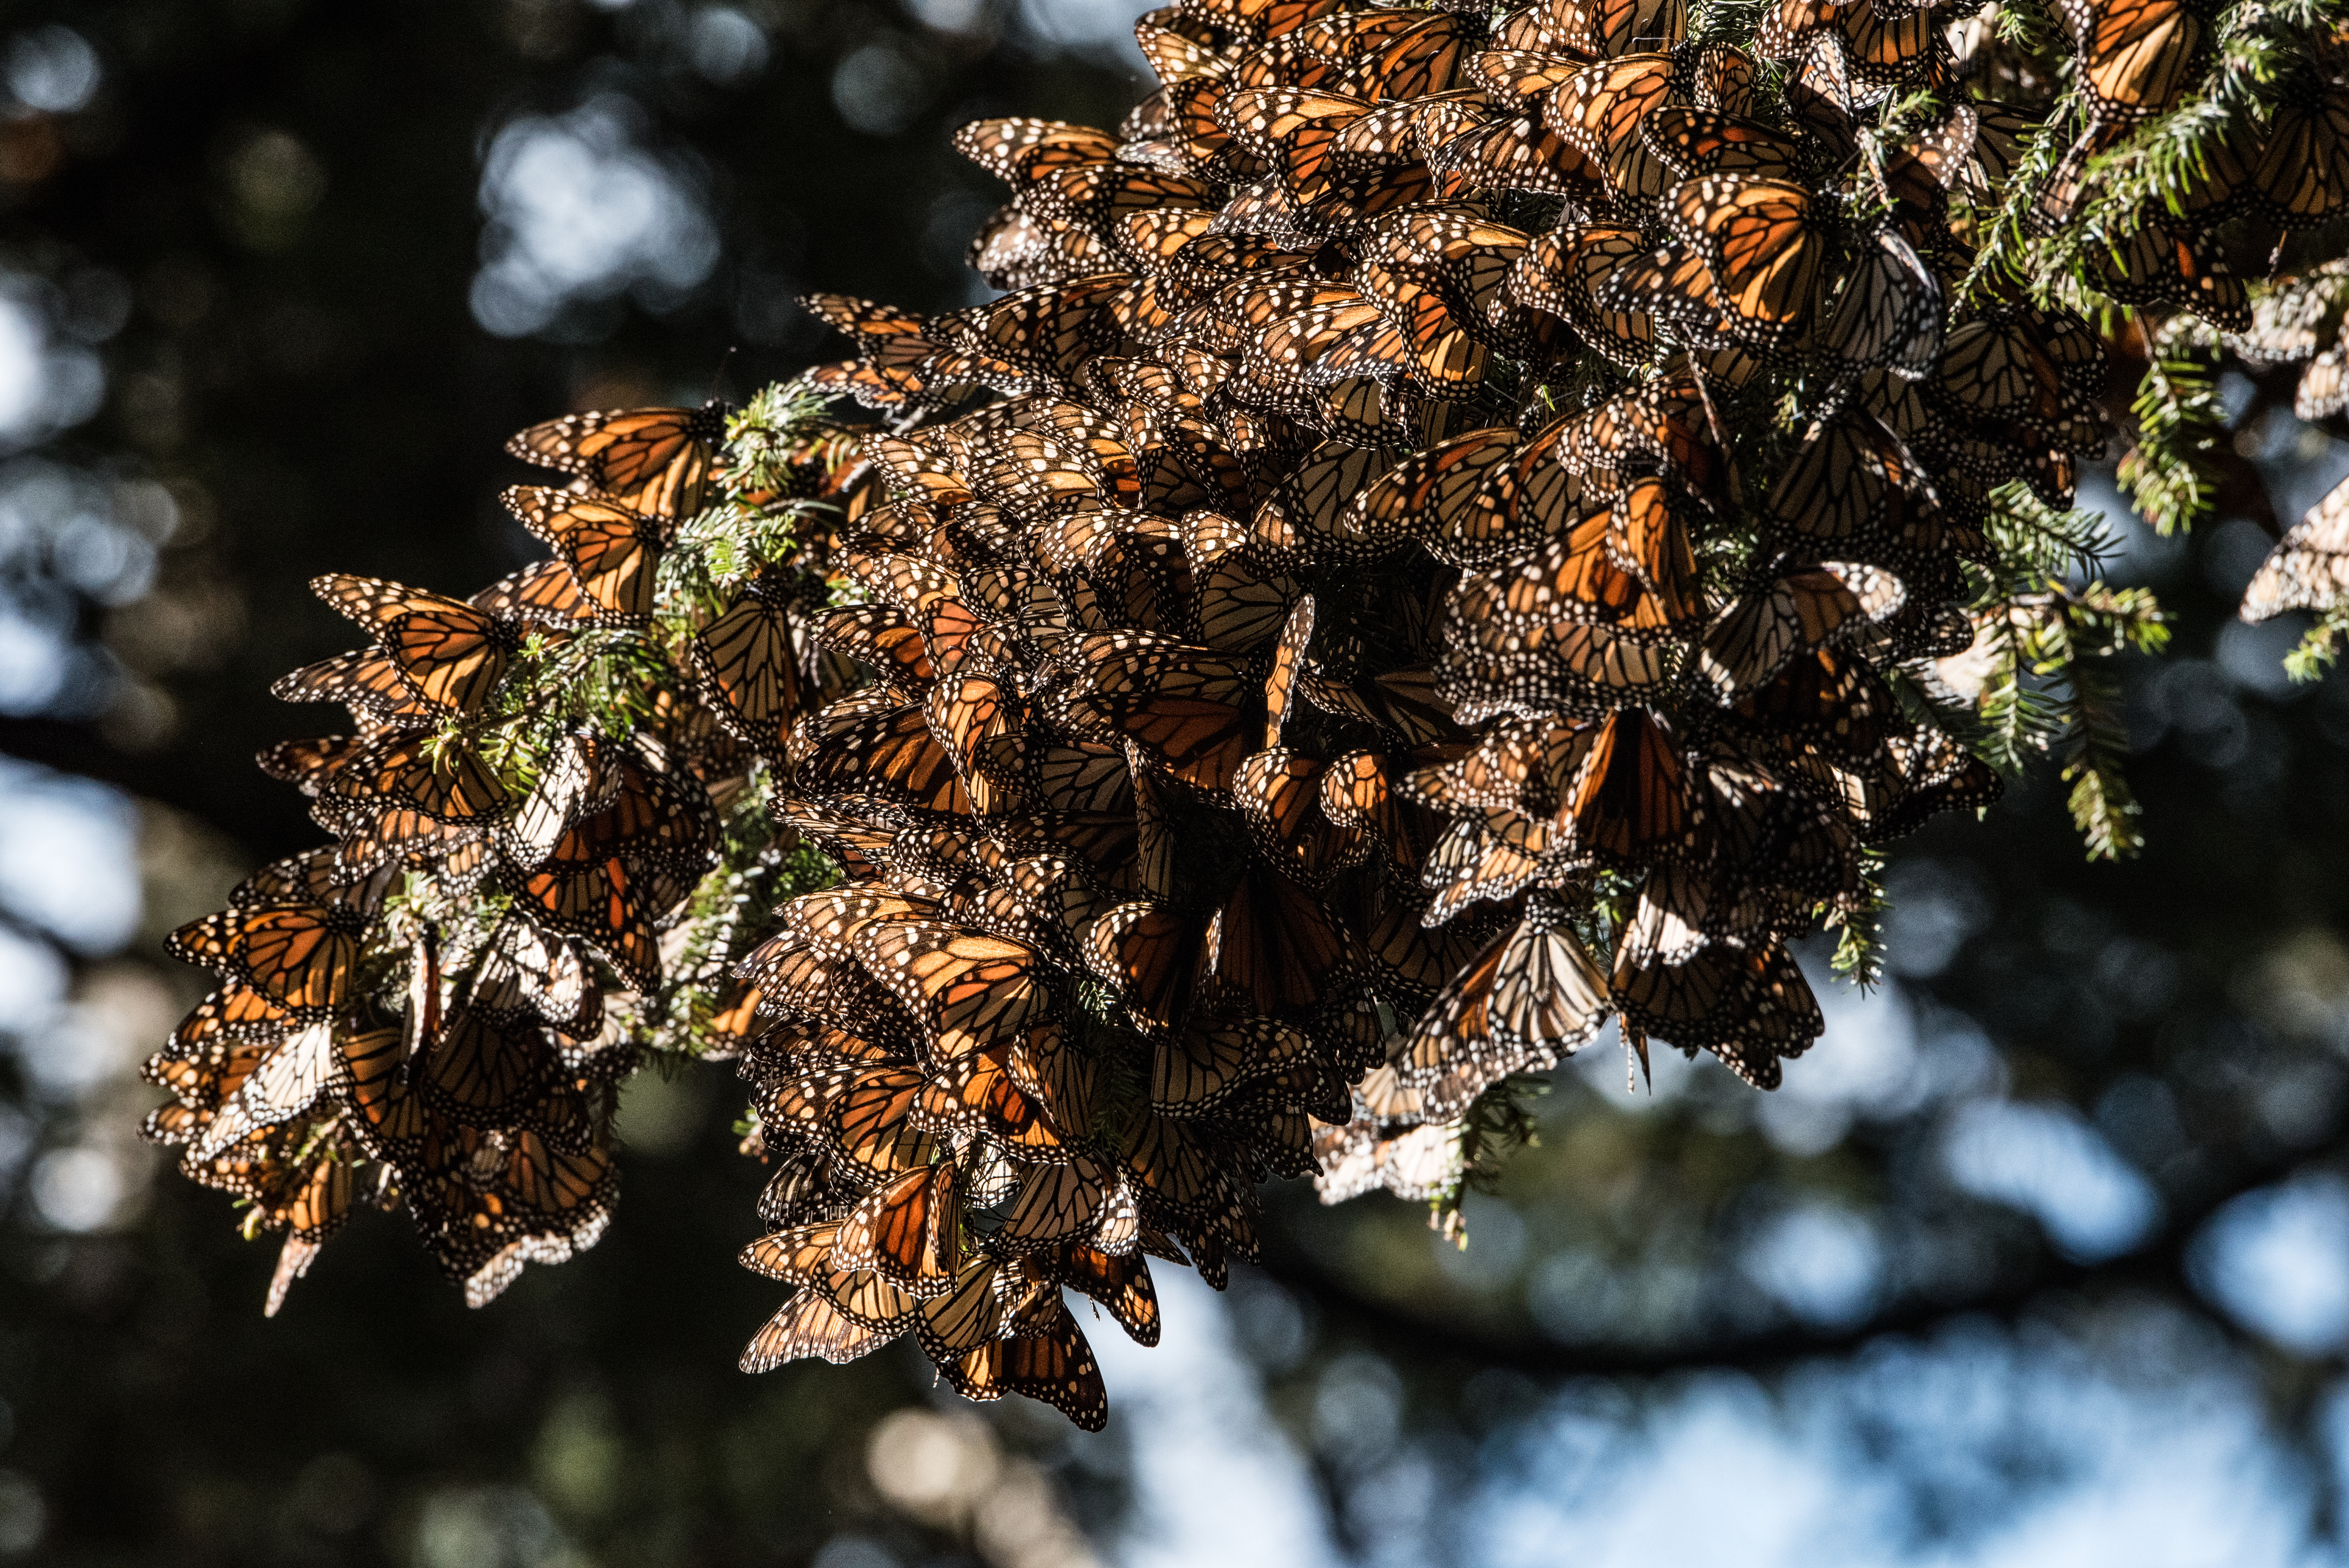 A cluster of monarch butterflies on a fir tree